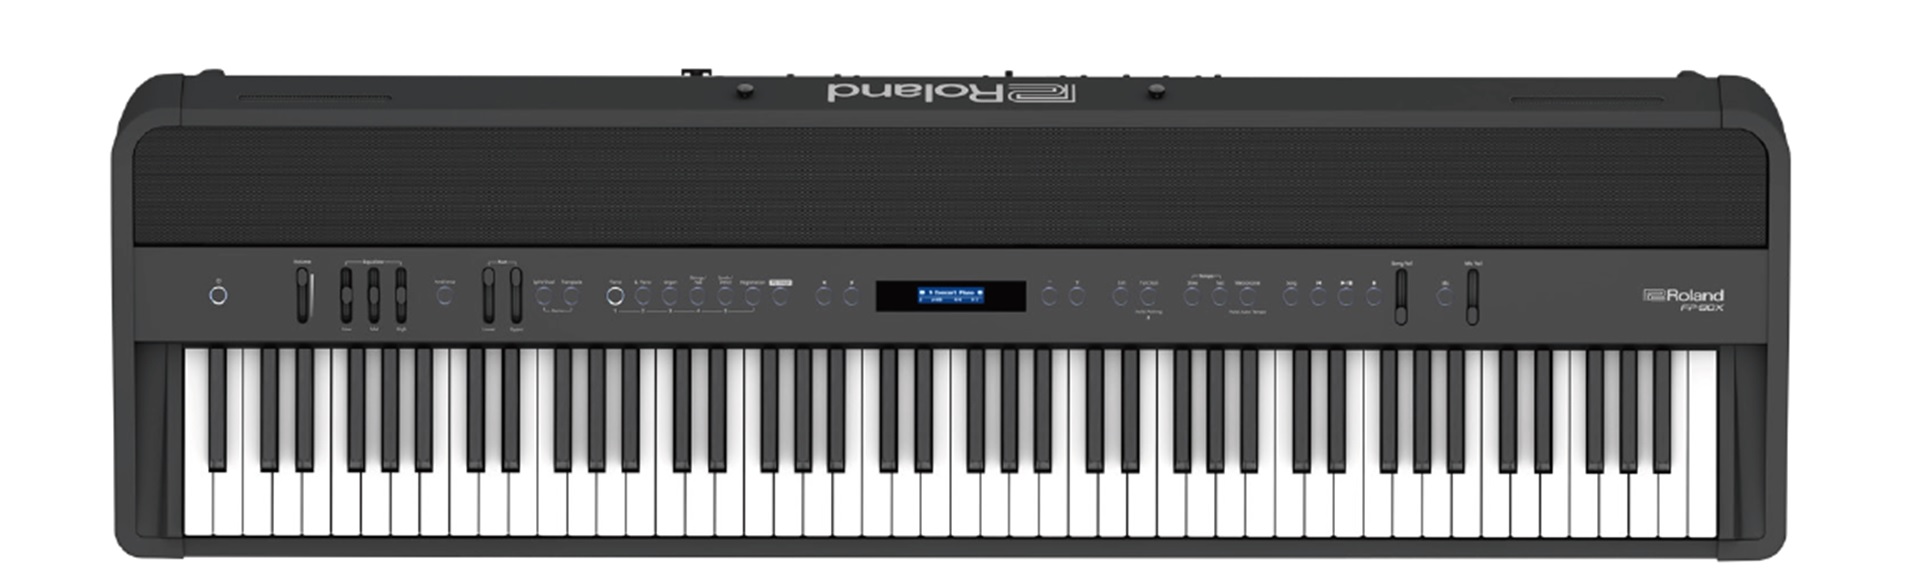 *Roland FP-90X/FP-60X/FP-30X ポータブル・ピアノFPシリーズがグレードアップして新登場 ***FP-30X ***FP-60X ***FP-90X スマートなデザインはそのままに、豊かな響きのピアノ・サウンドをはじめ、最新技術を盛り込みました。]]ホームユースでお使いいた […]